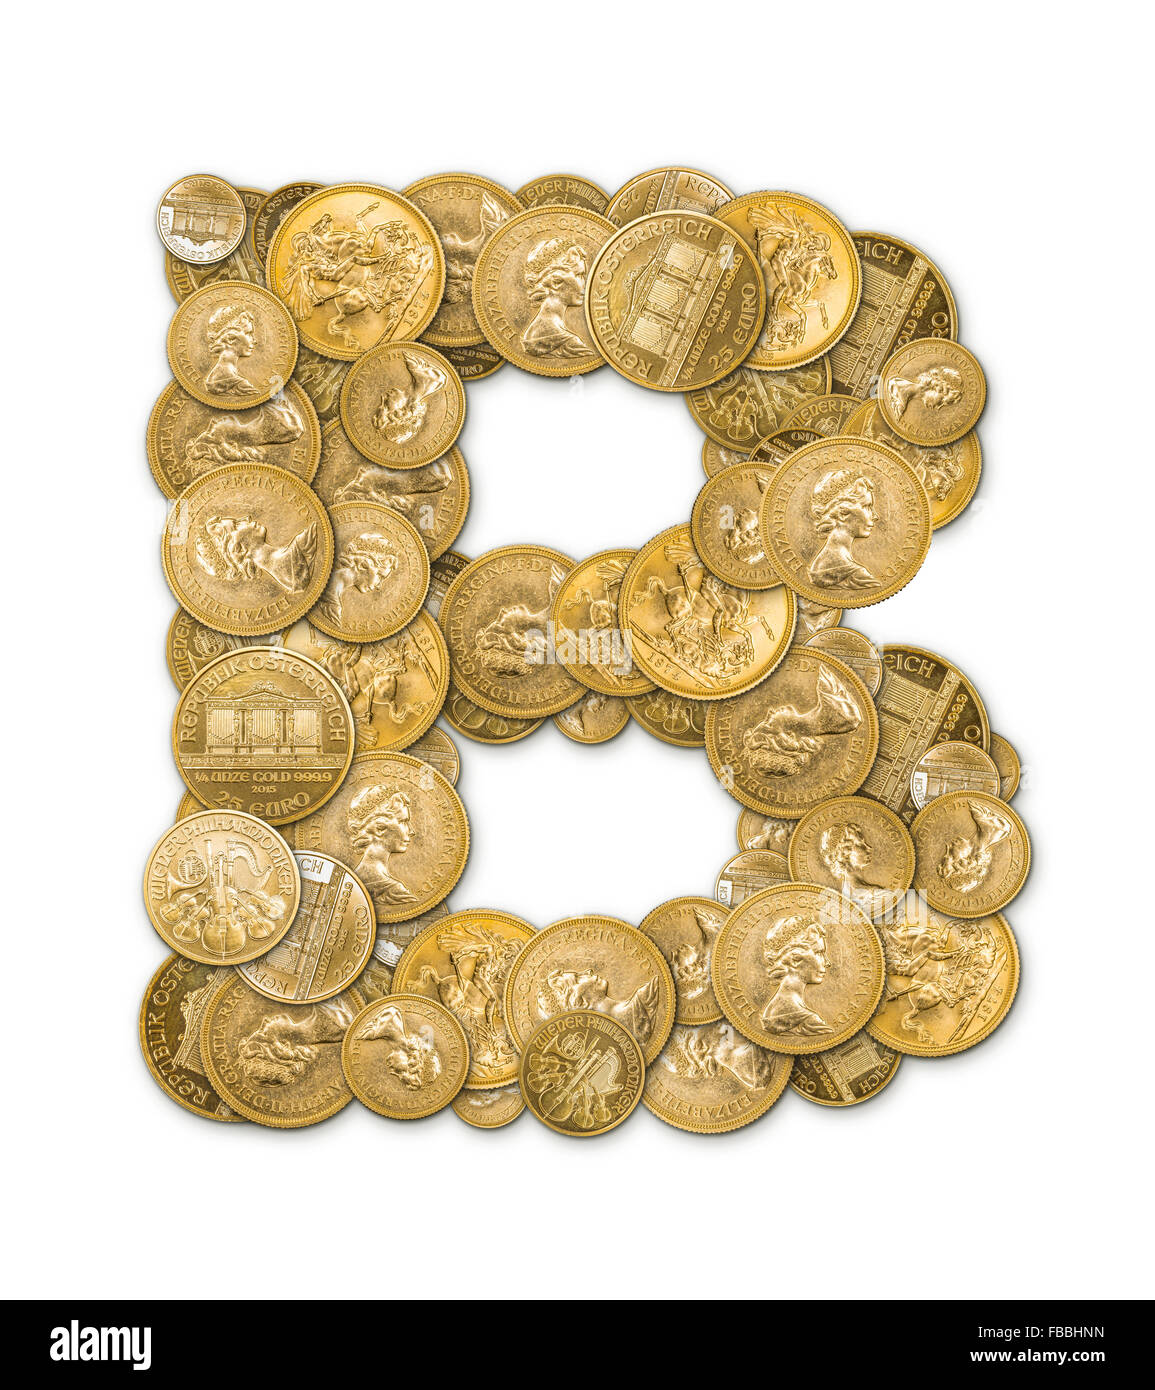 Lettre B fabriqués à partir de pièces d'or argent isolé sur fond blanc Banque D'Images